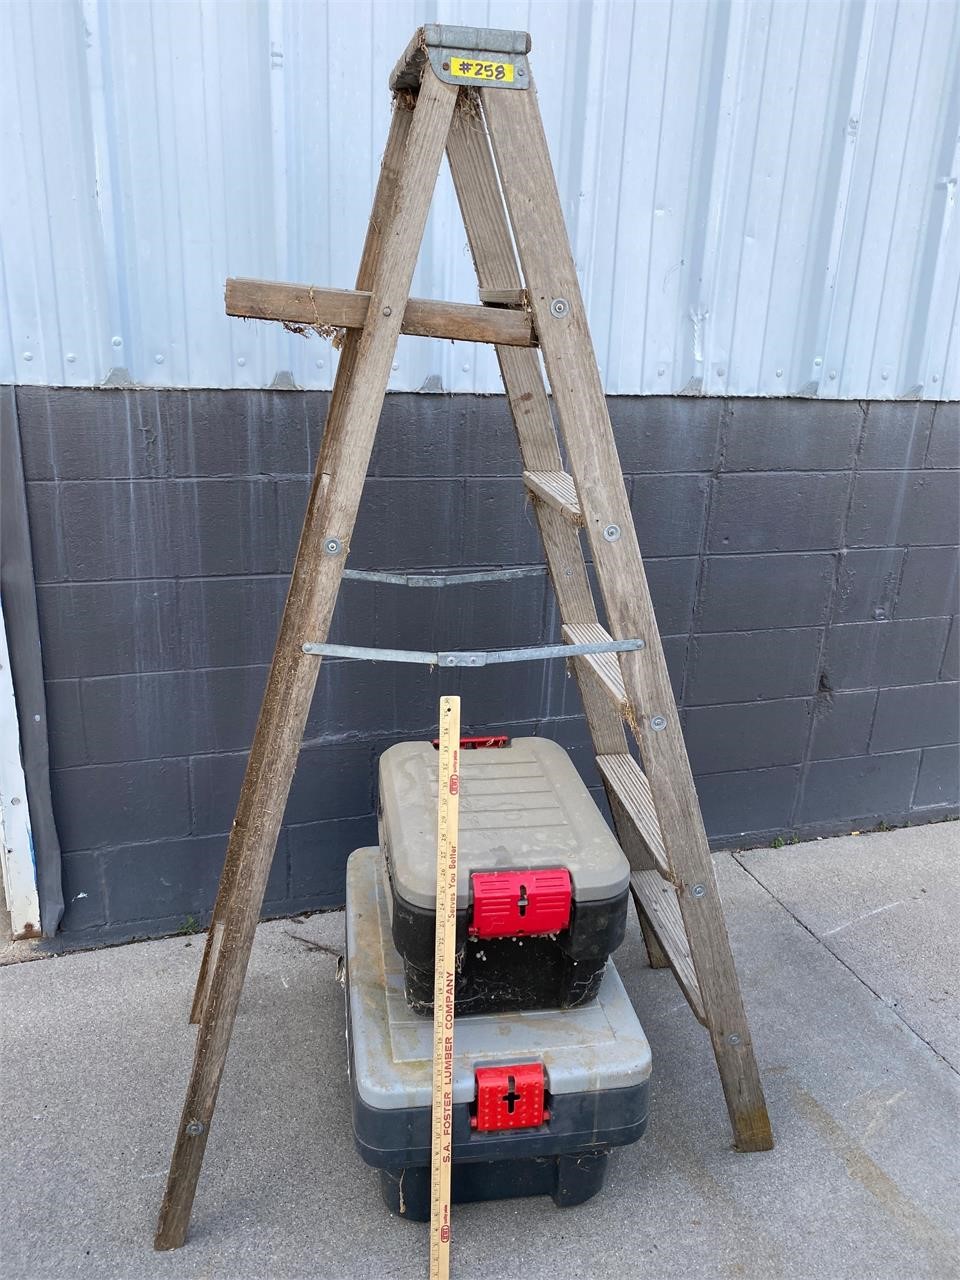 6’ Ladder & Storage Totes